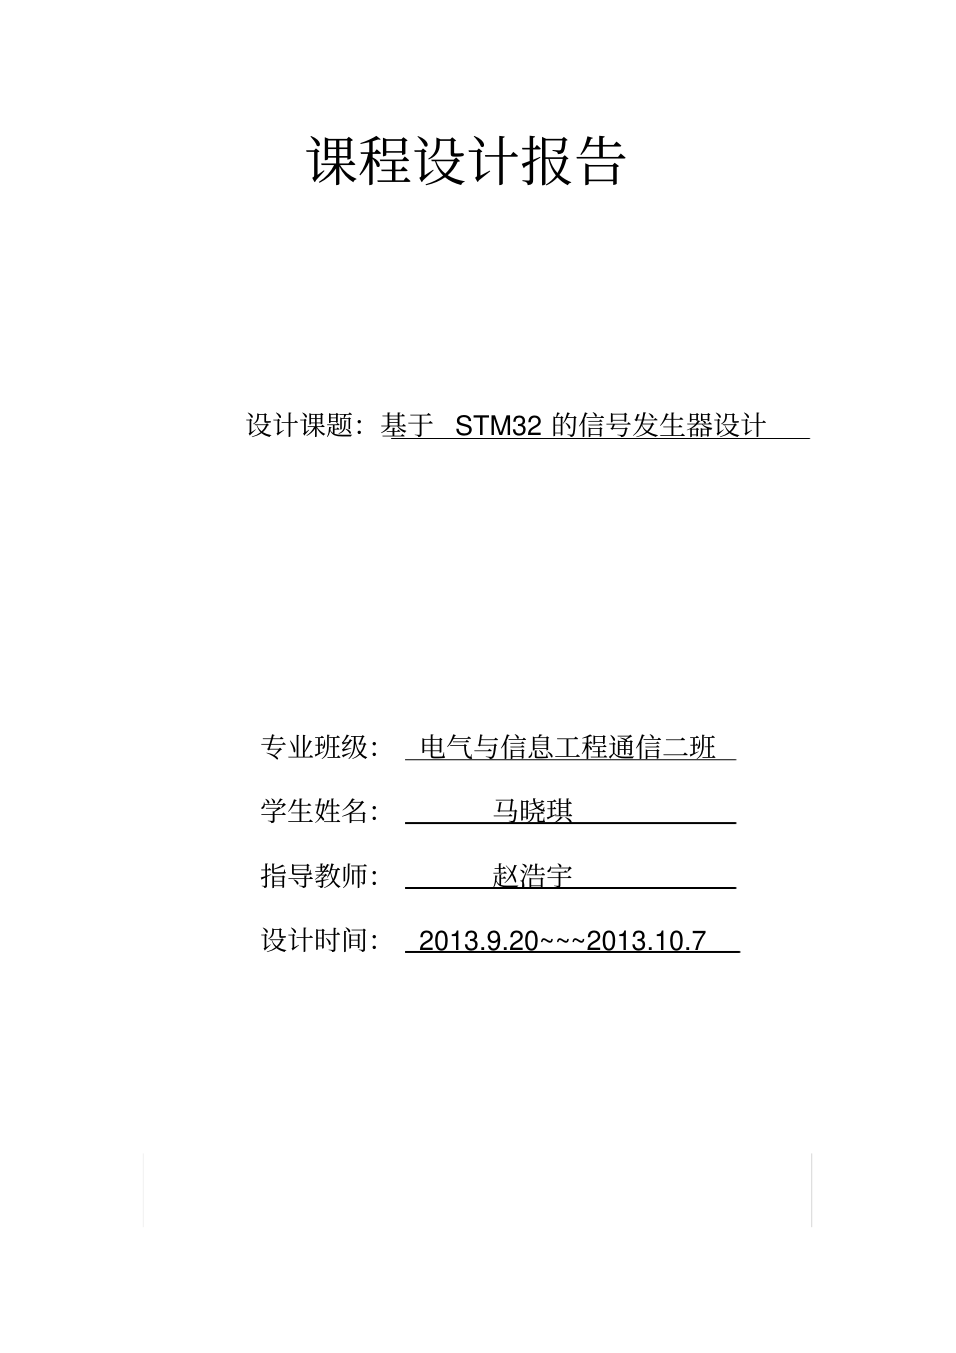 基于stm32的信号发生器(20201215200758)_1.png